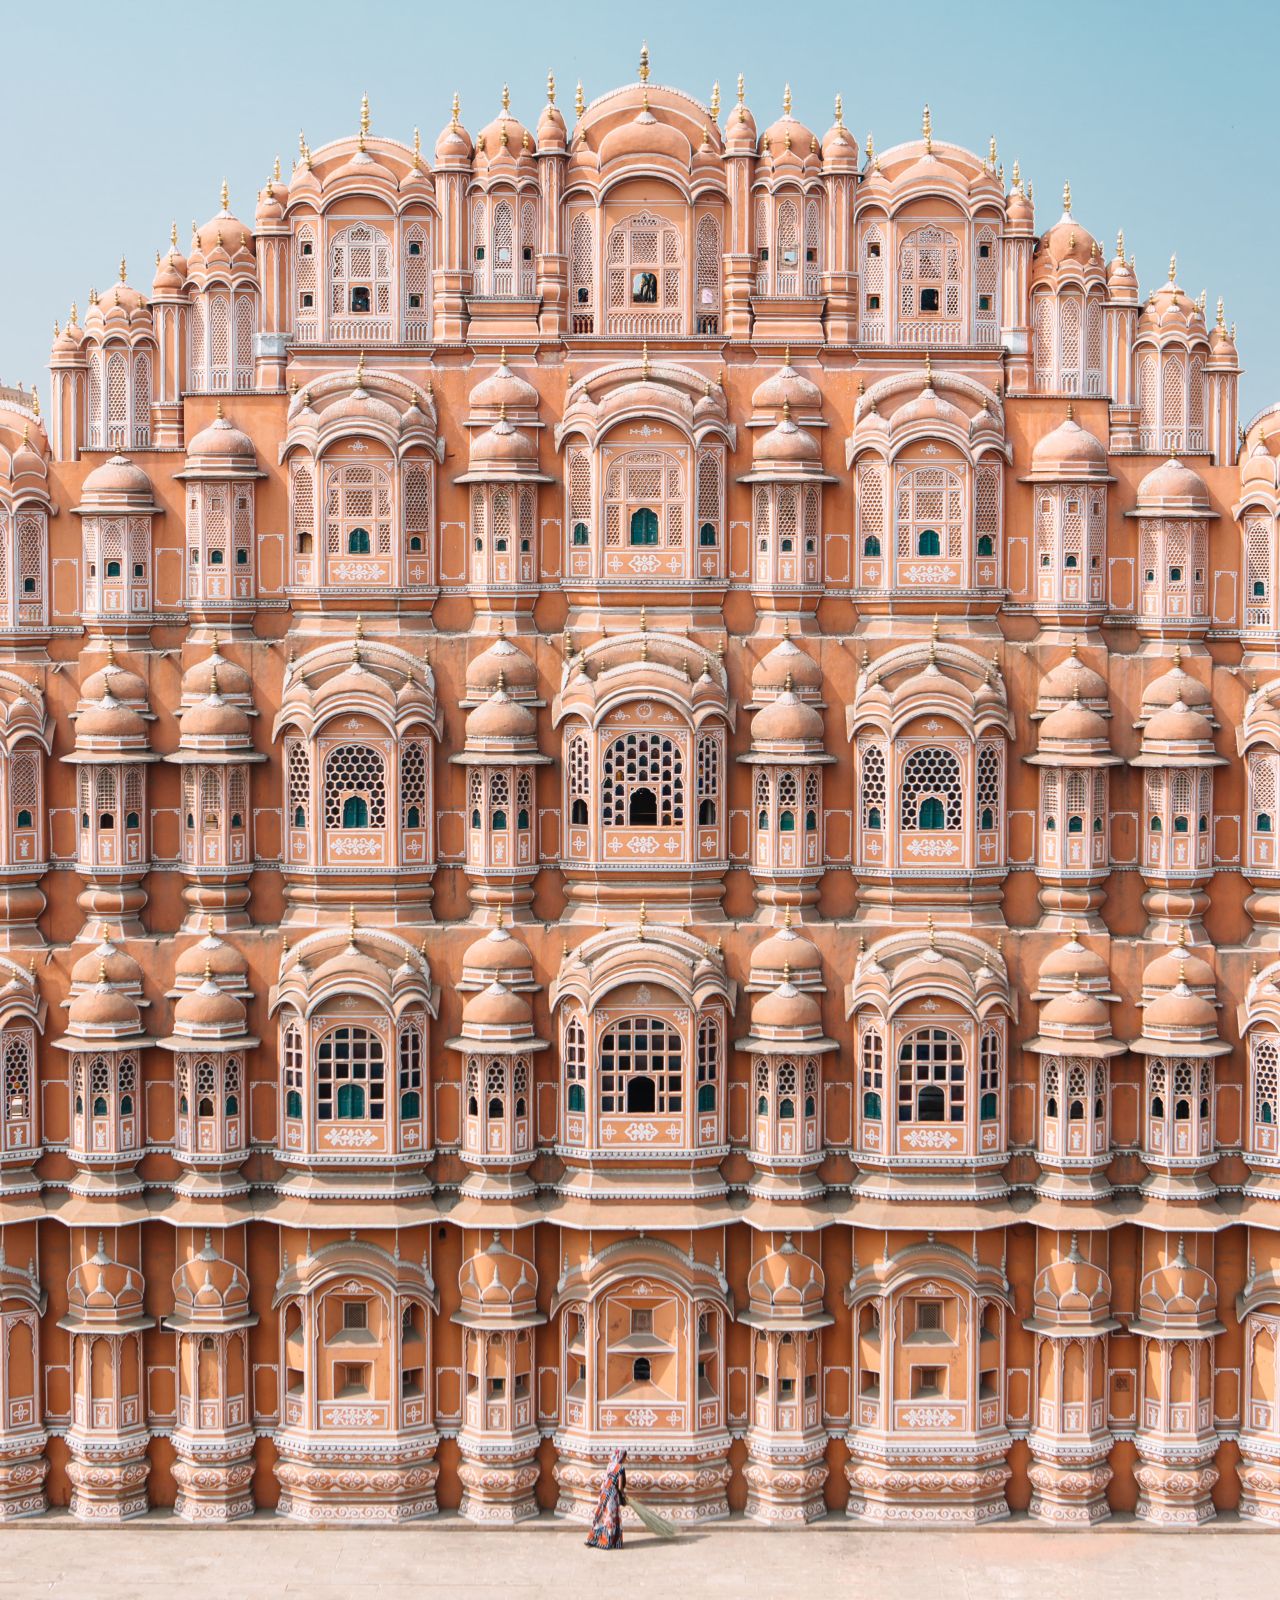  Thành phố Jaipur là một trong những kỳ quan kiến ​​trúc của Ấn Độ. Nơi đây có một số cung điện hoàng gia được trang trí công phu nhất của đất nước - những công trình kiến ​​trúc phức tạp được thiết kế từ hàng trăm năm trước vẫn làm say lòng du khách ngày nay.  Được xây dựng quy mô lớn vào những năm 1700 theo lệnh của vua Rajput Sawai Raja Jai ​​Singh II, Jaipur được bao quanh bởi tường thành và một số pháo đài phòng thủ. Được hình thành như một trung tâm thương mại ở bang Rajasthan, nó đã được coi là đi trước thời đại do sử dụng quy hoạch thành phố dạng lưới sắt .  Màu hồng bụi lãng mạn - đã xác định thành phố từ năm 1876, sau khi nó được sơn màu hồng để chào đón chồng của Nữ hoàng Victoria, Hoàng tử Albert - mang lại cho Jaipur vị thế là Thành phố màu hồng, như nó thường được biết đến.